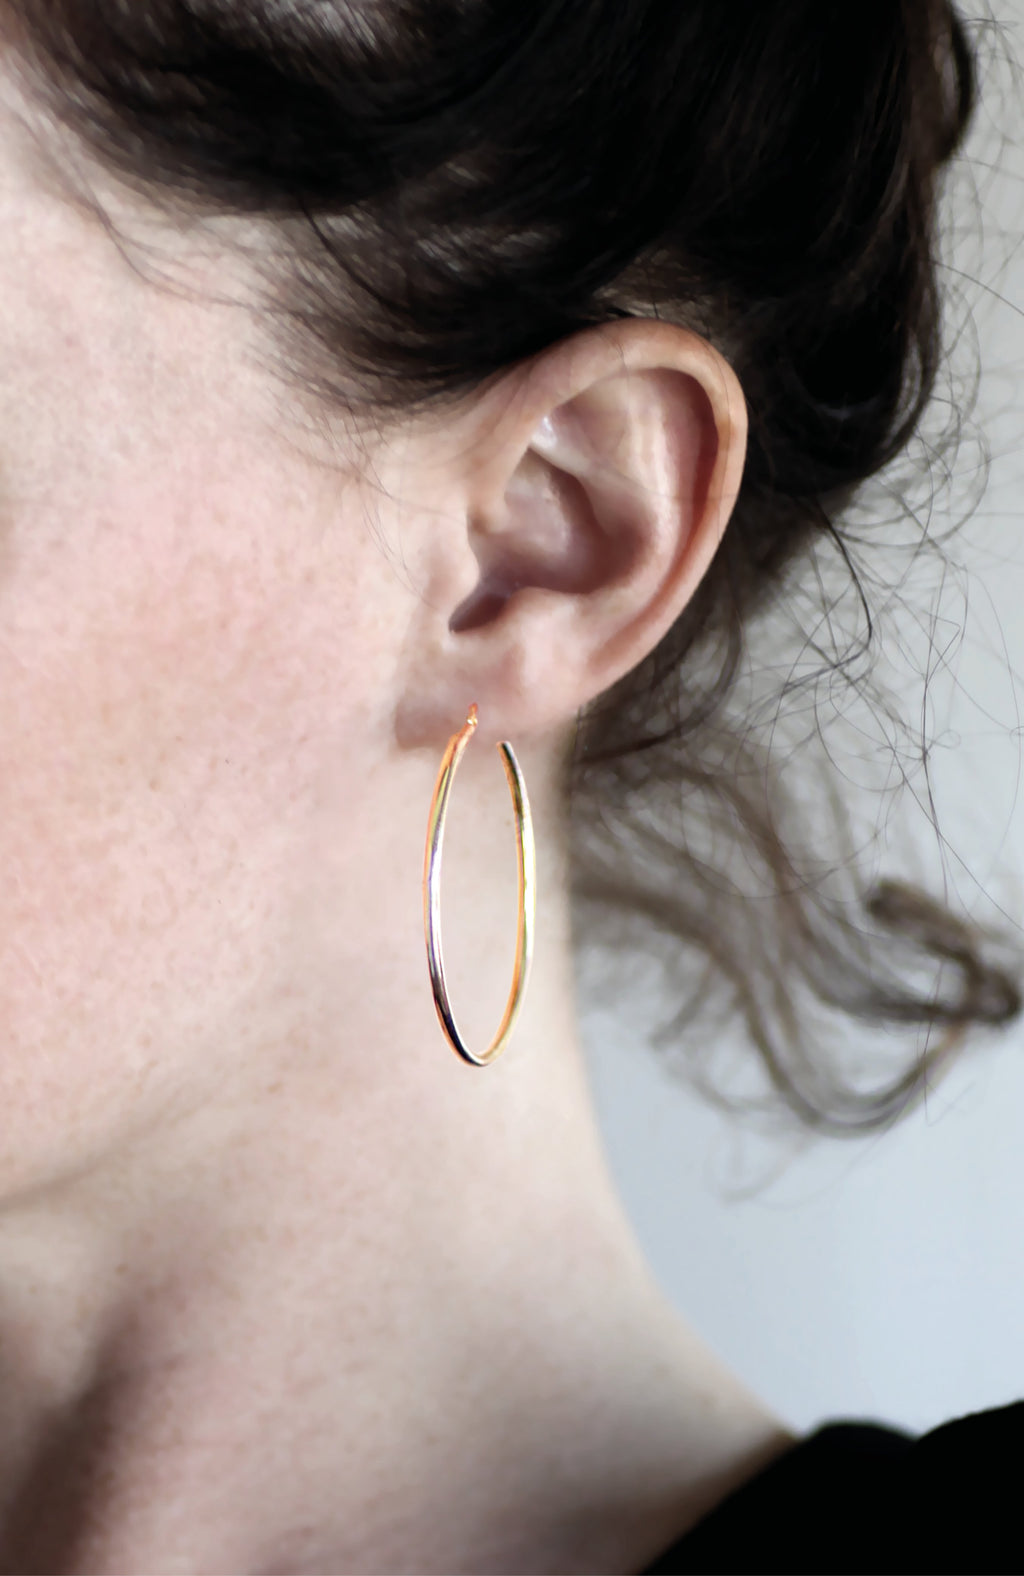 Gold large hoop earrings